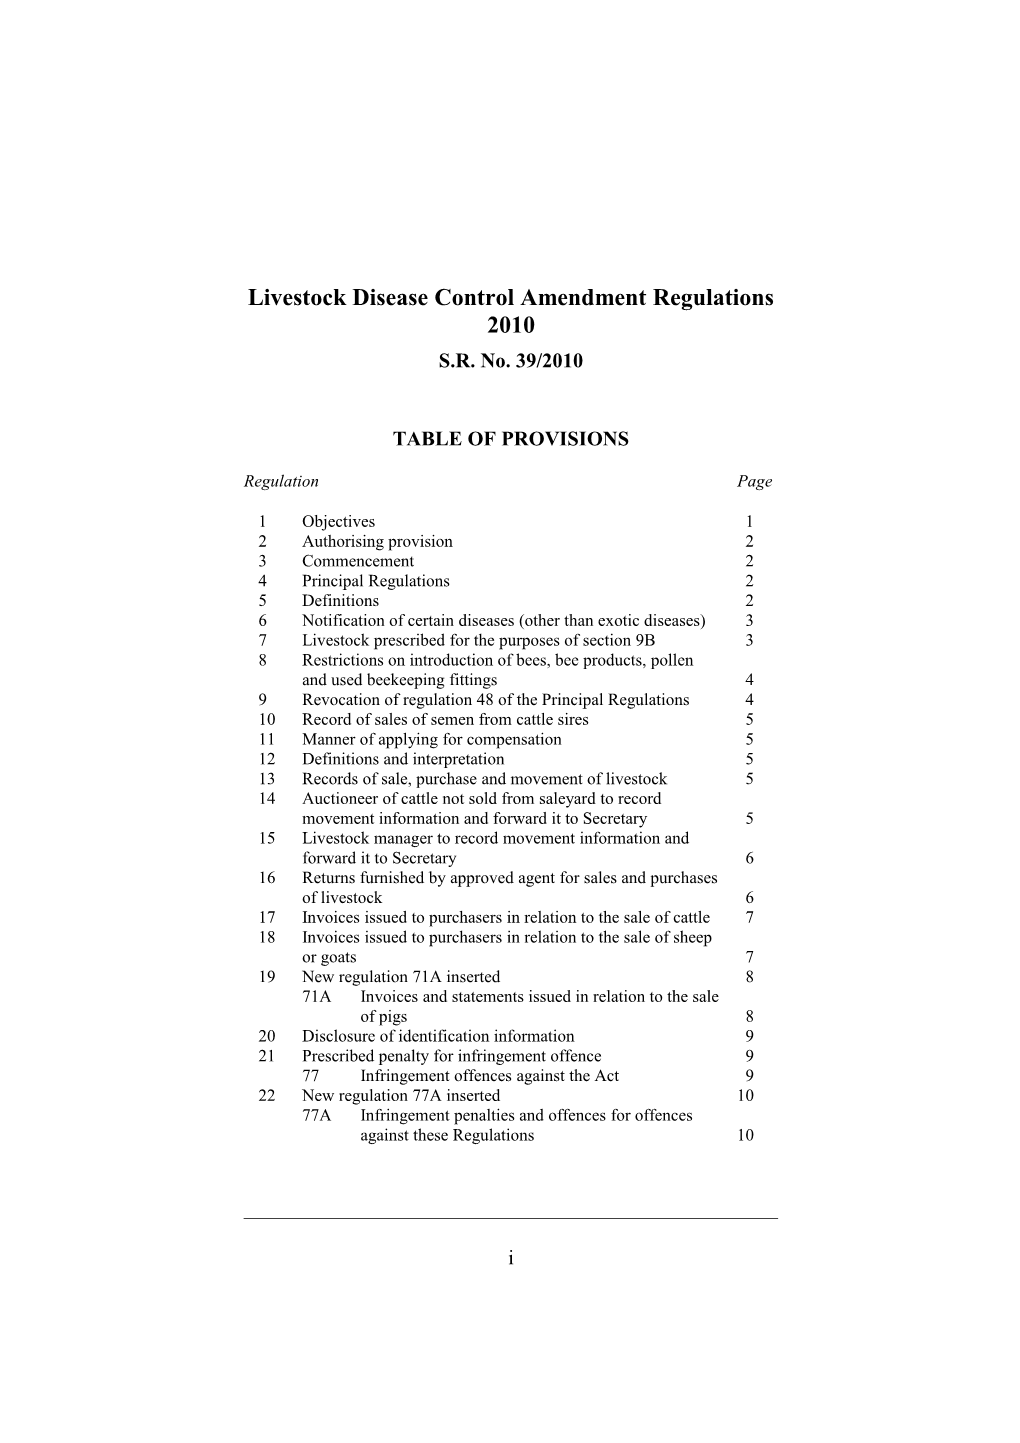 Livestock Disease Control Amendment Regulations 2010